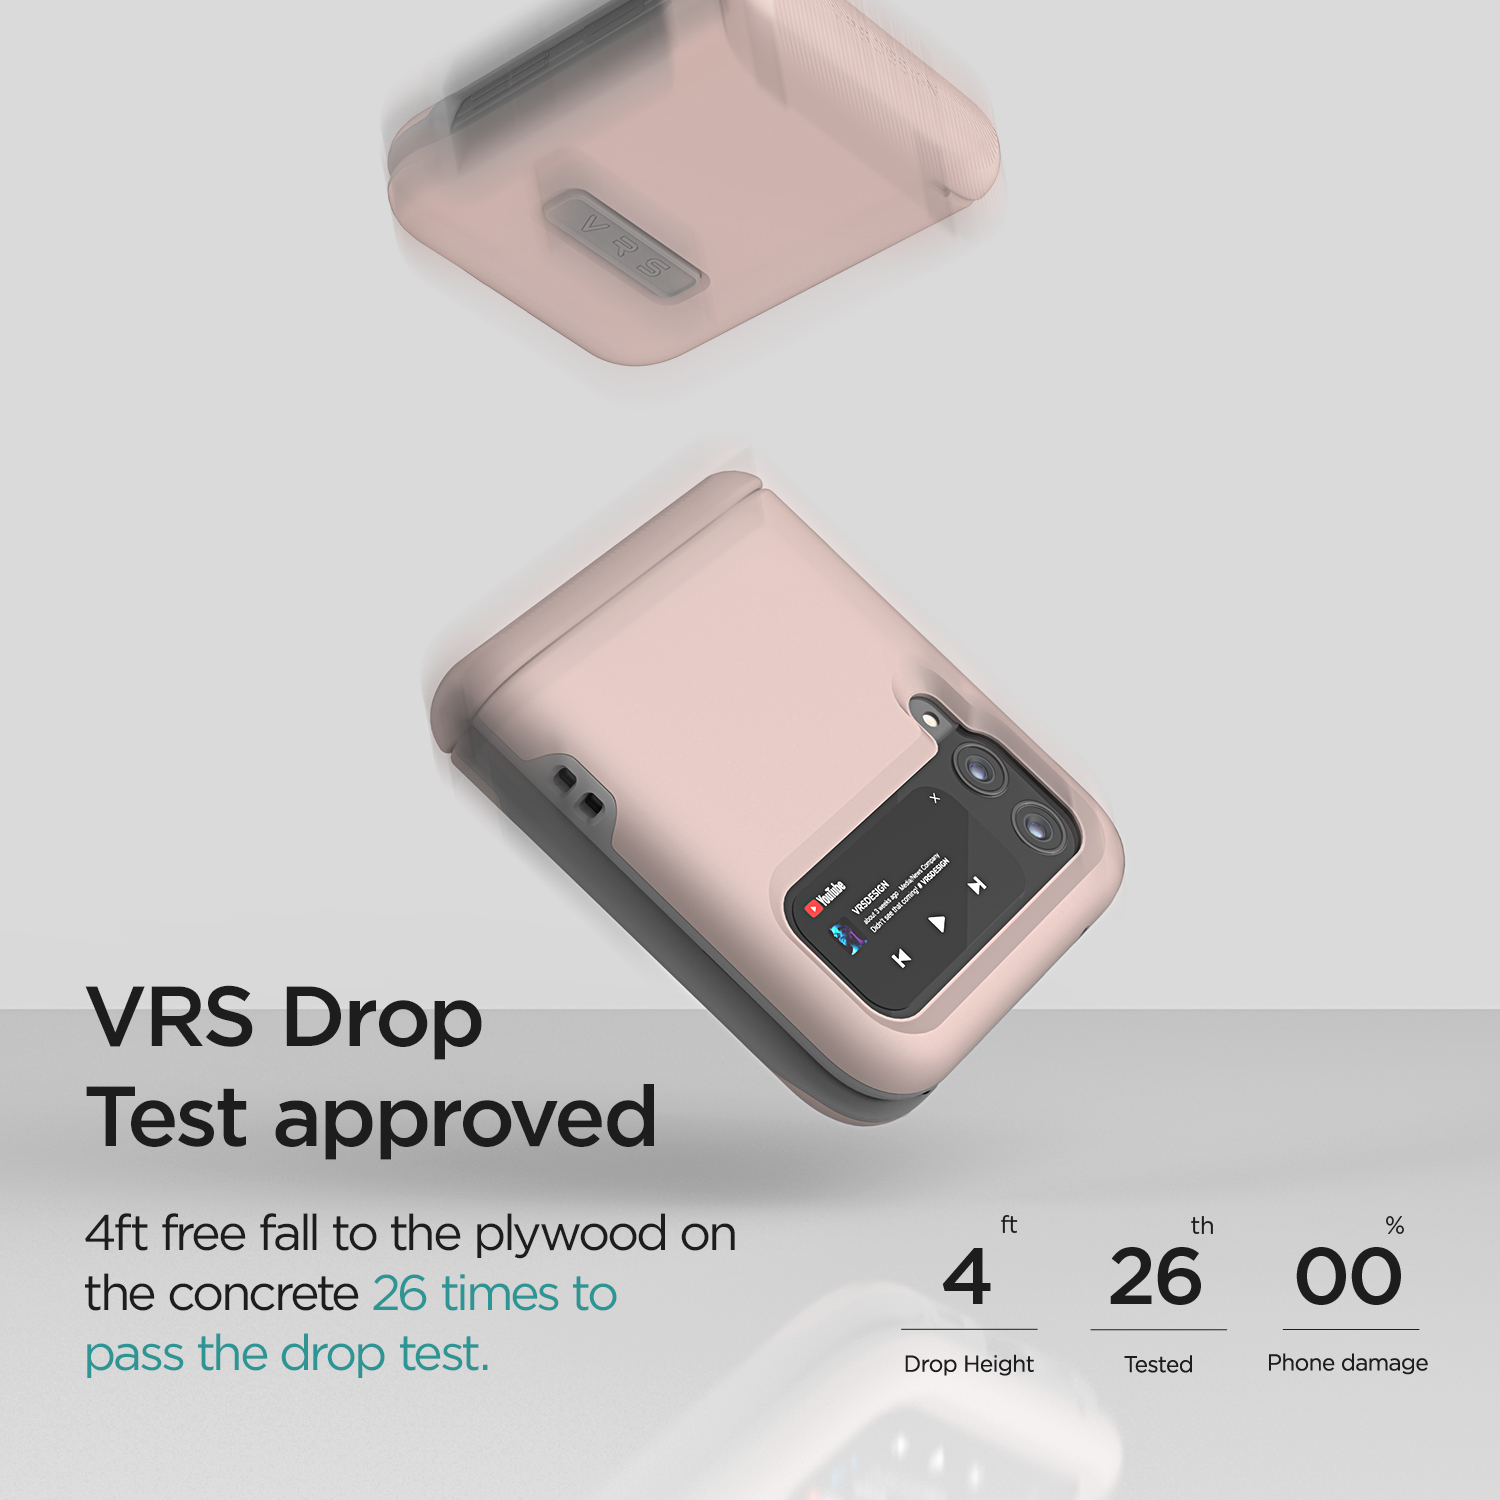 เคส VRS รุ่น Terra Guard Modern - Galaxy Z Flip 3 - สี Pink Sand